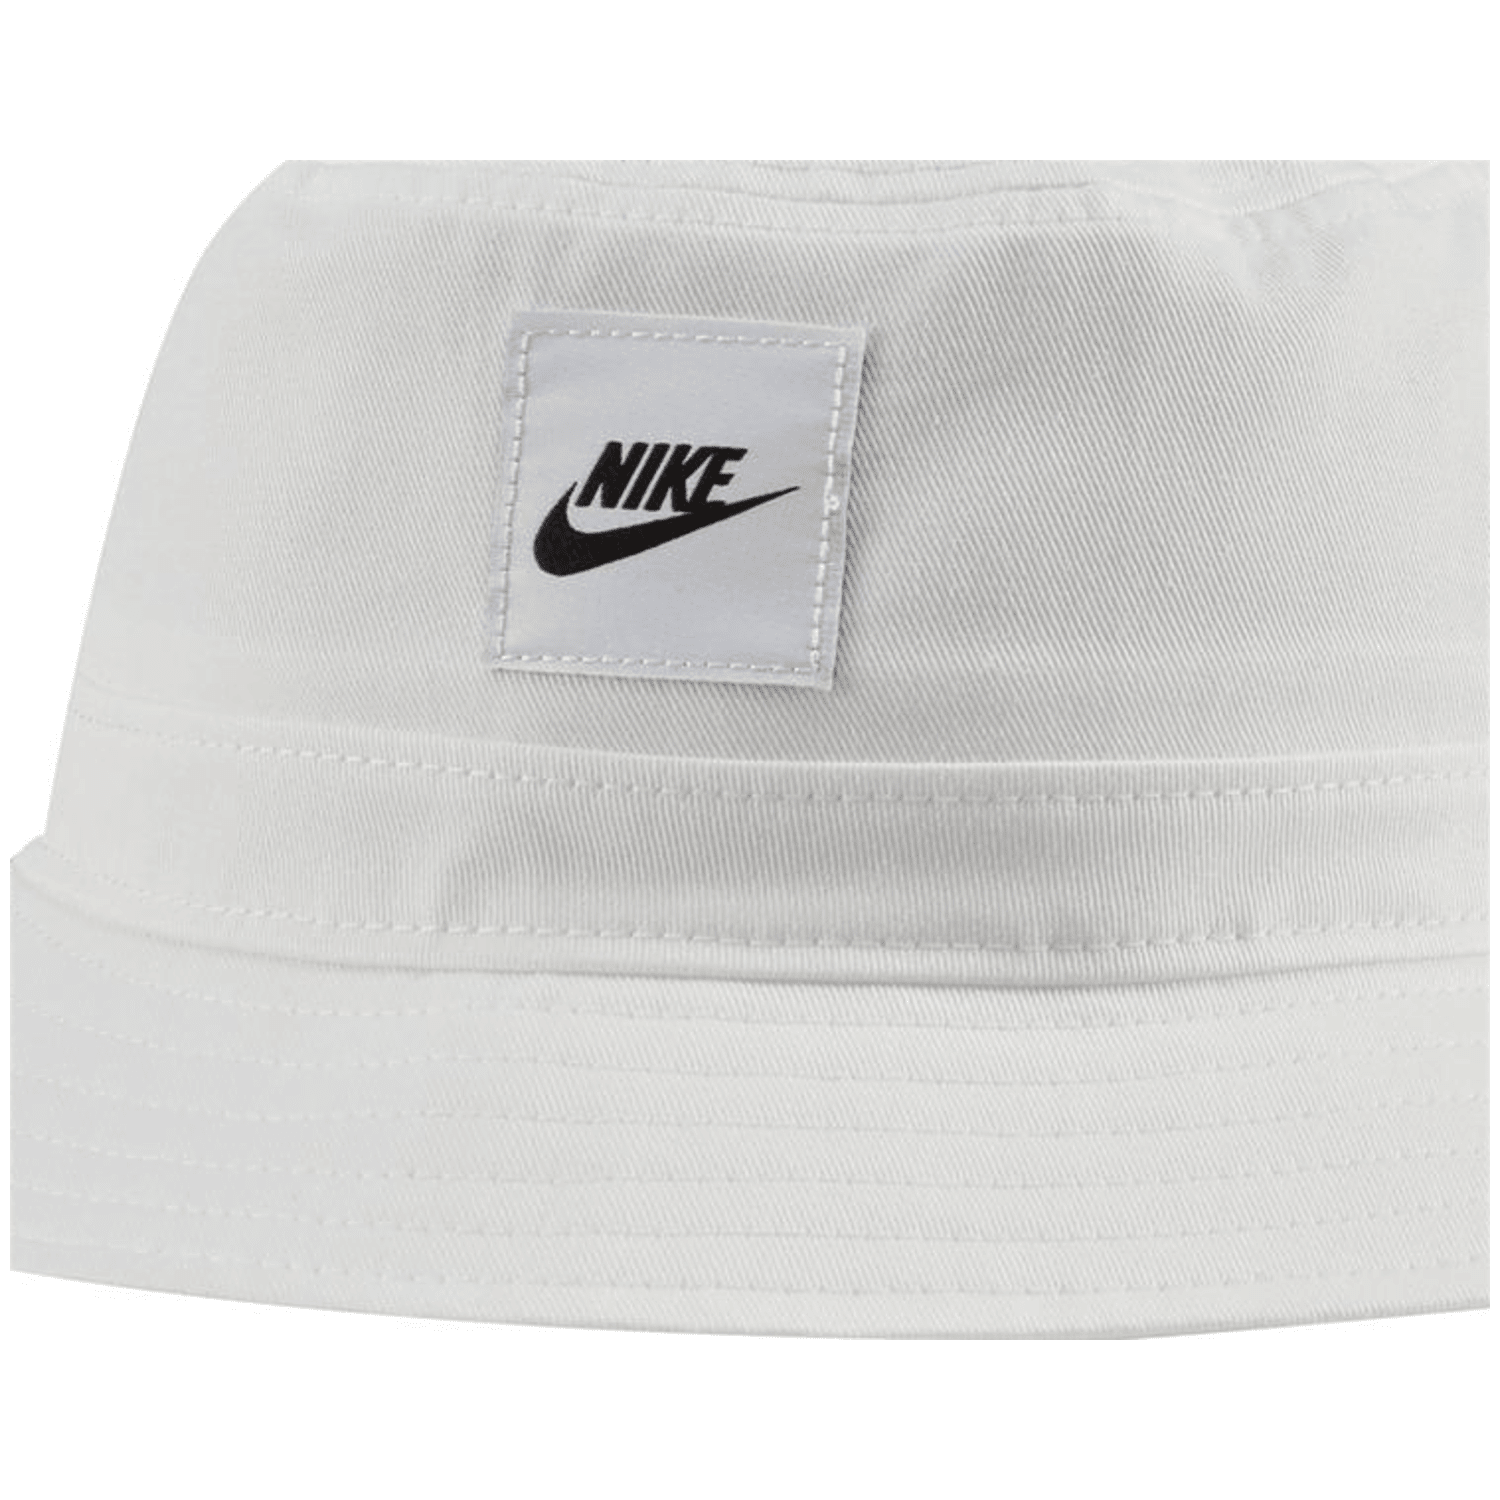 Nike Sportswear Bucket Unisex Cap